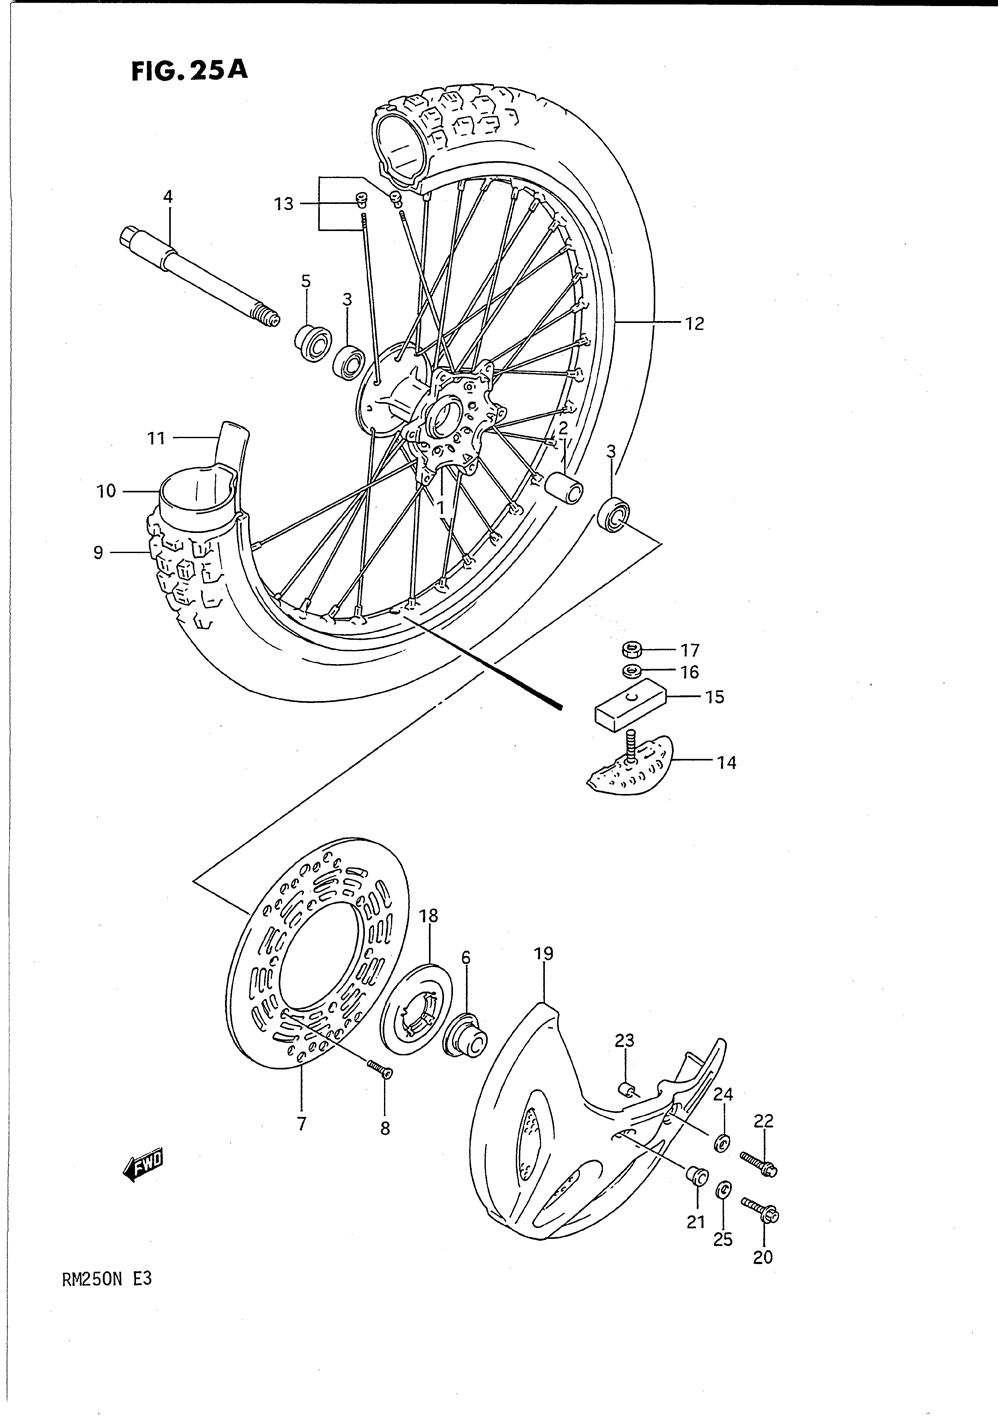 Front wheel (model n)